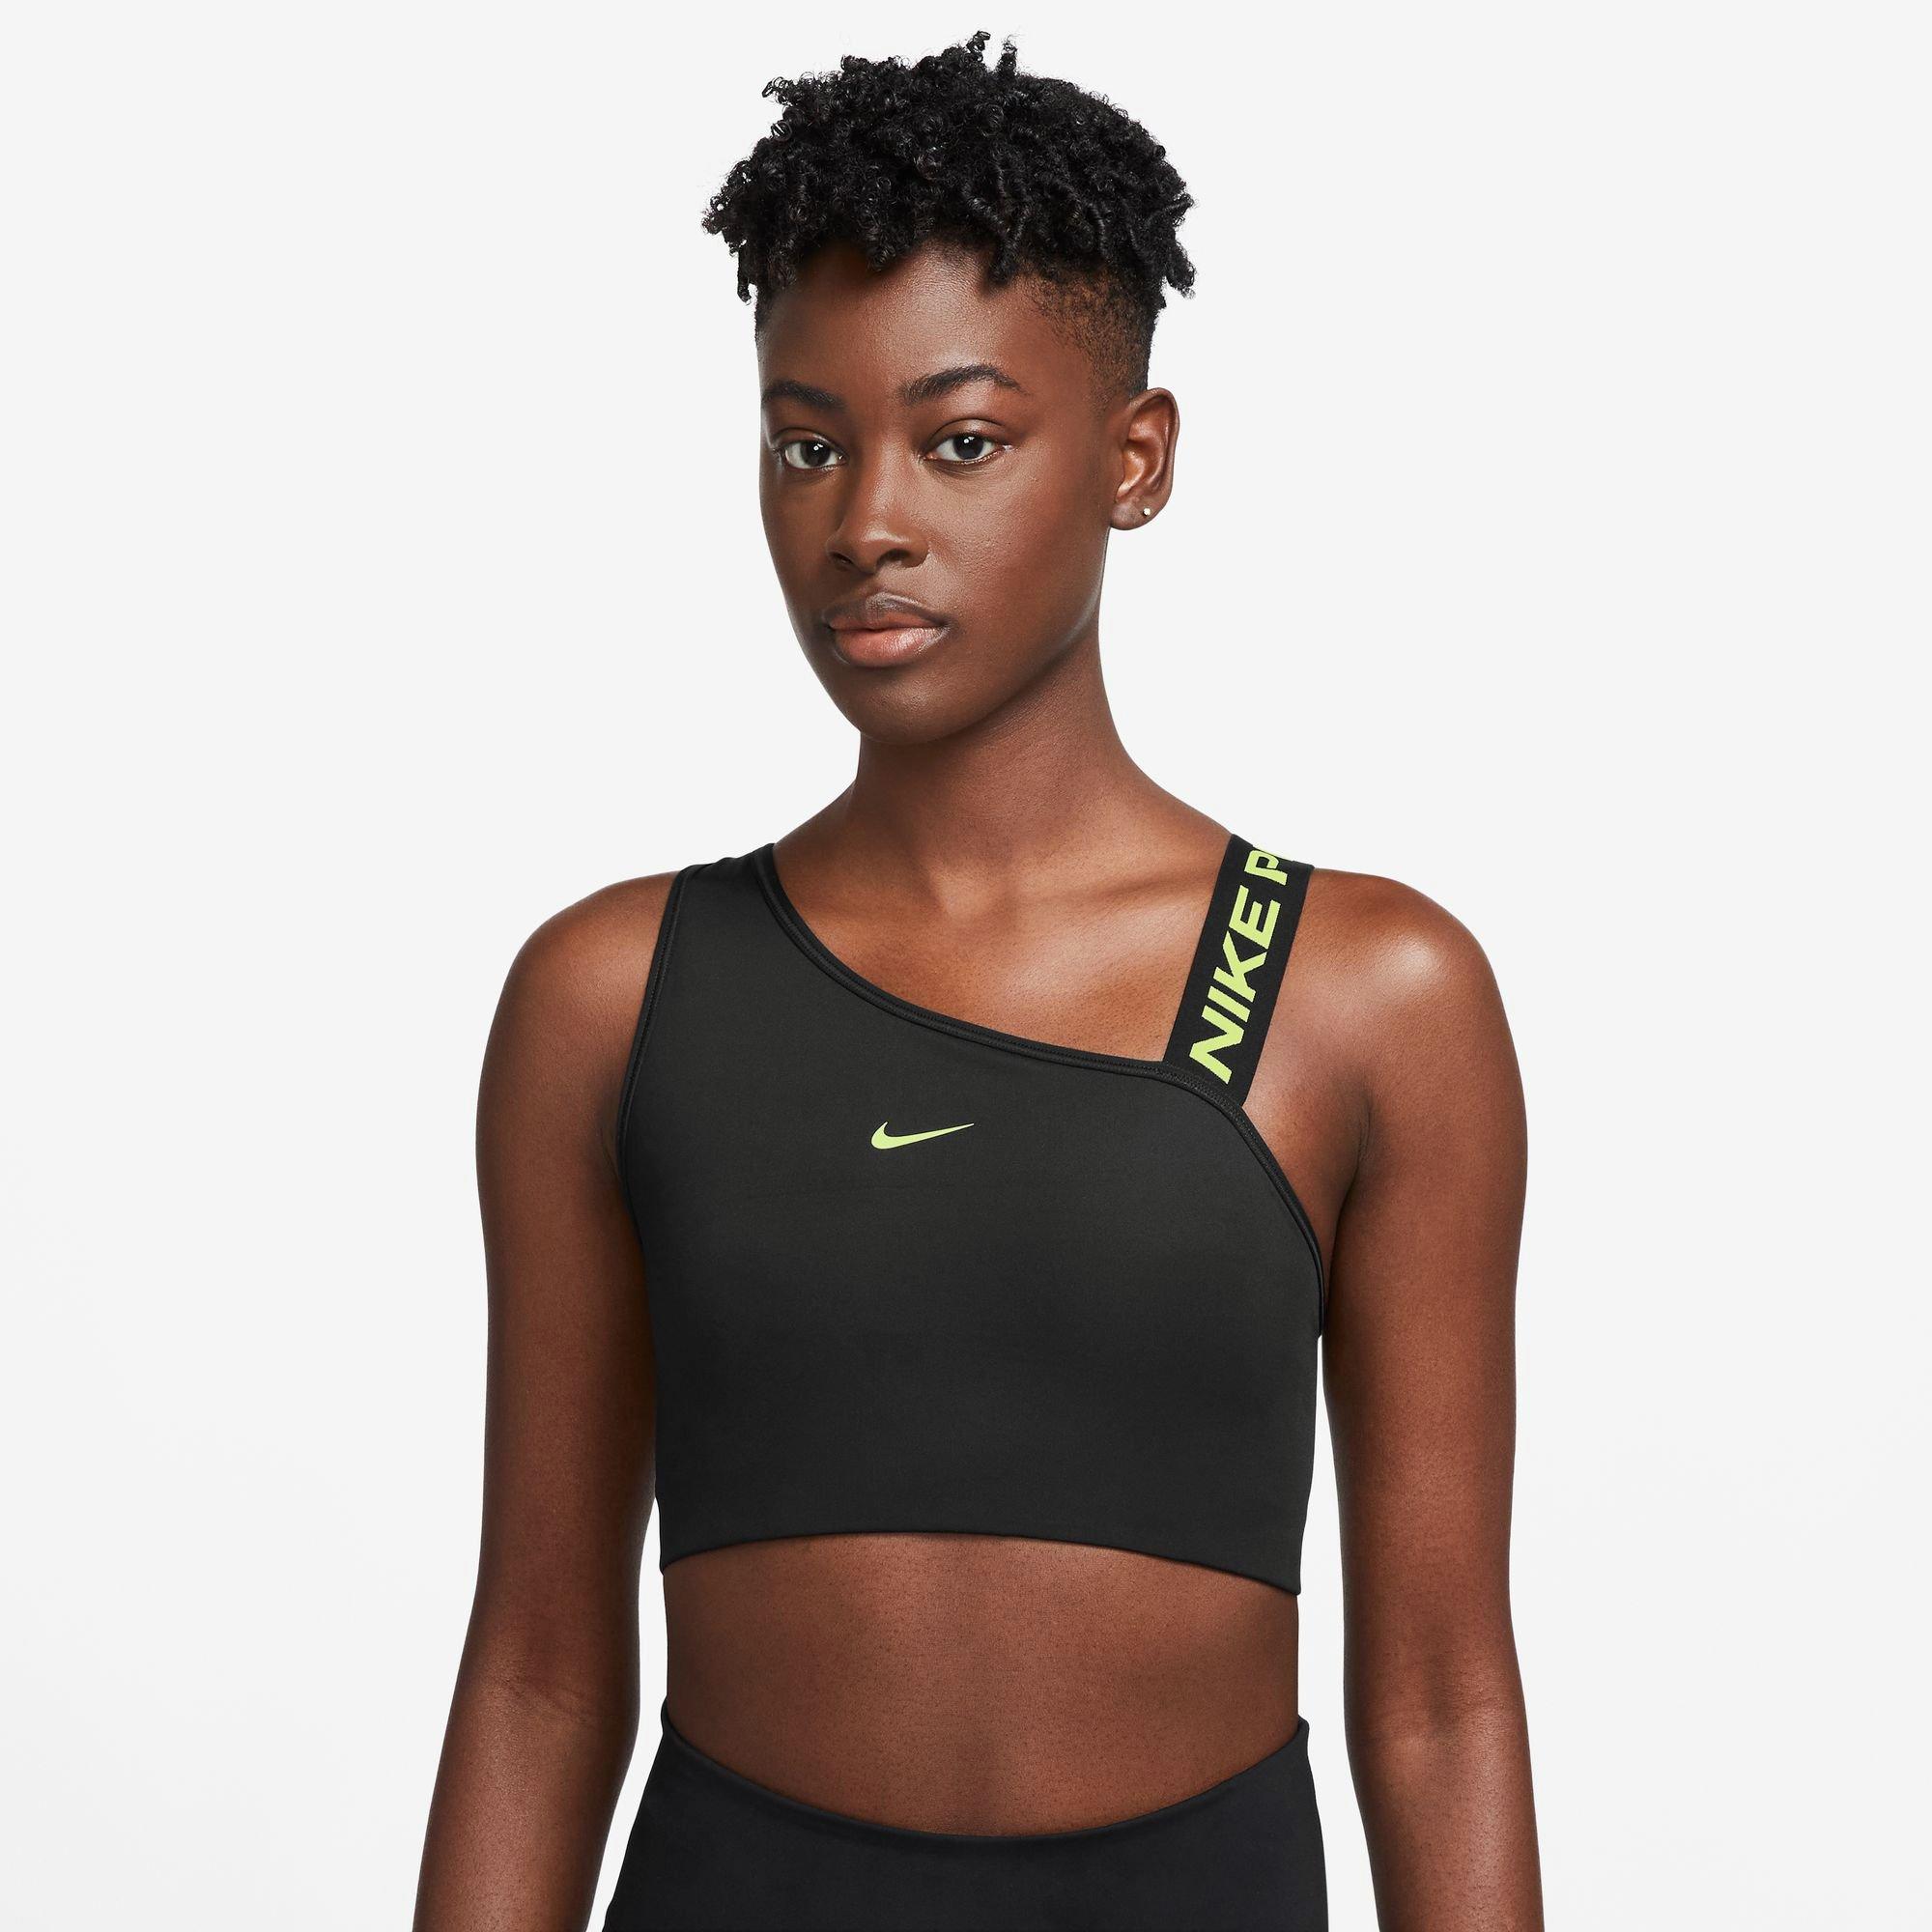 Women's Nike Swoosh Bra 2.0 - Bauman's Running & Walking Shop